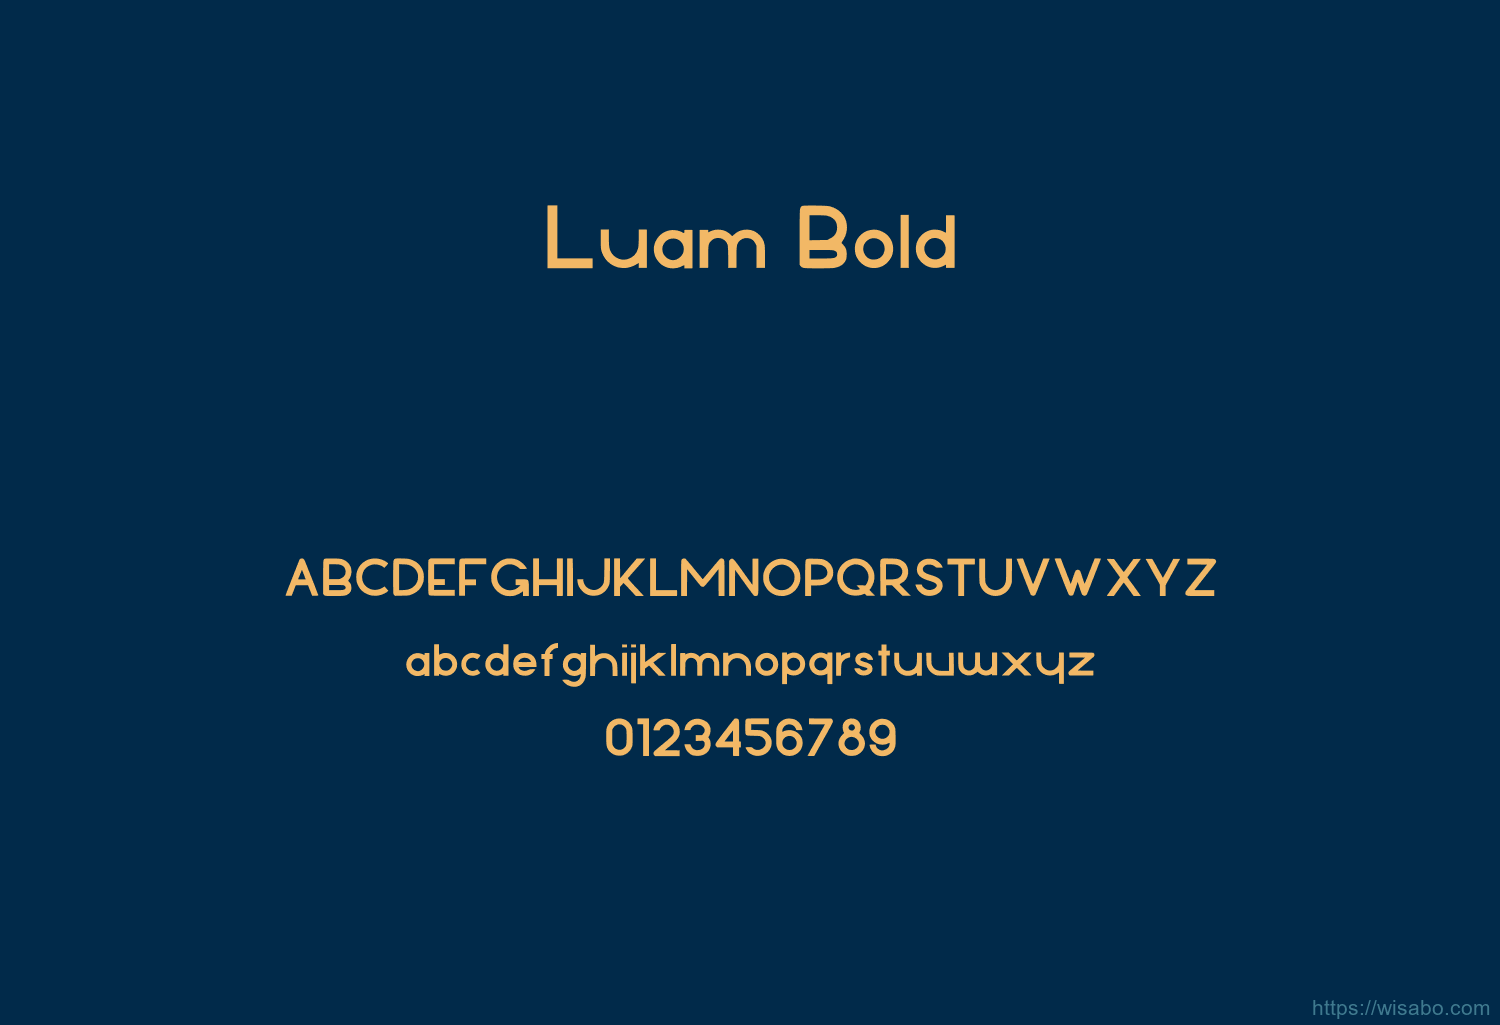 Luam Bold